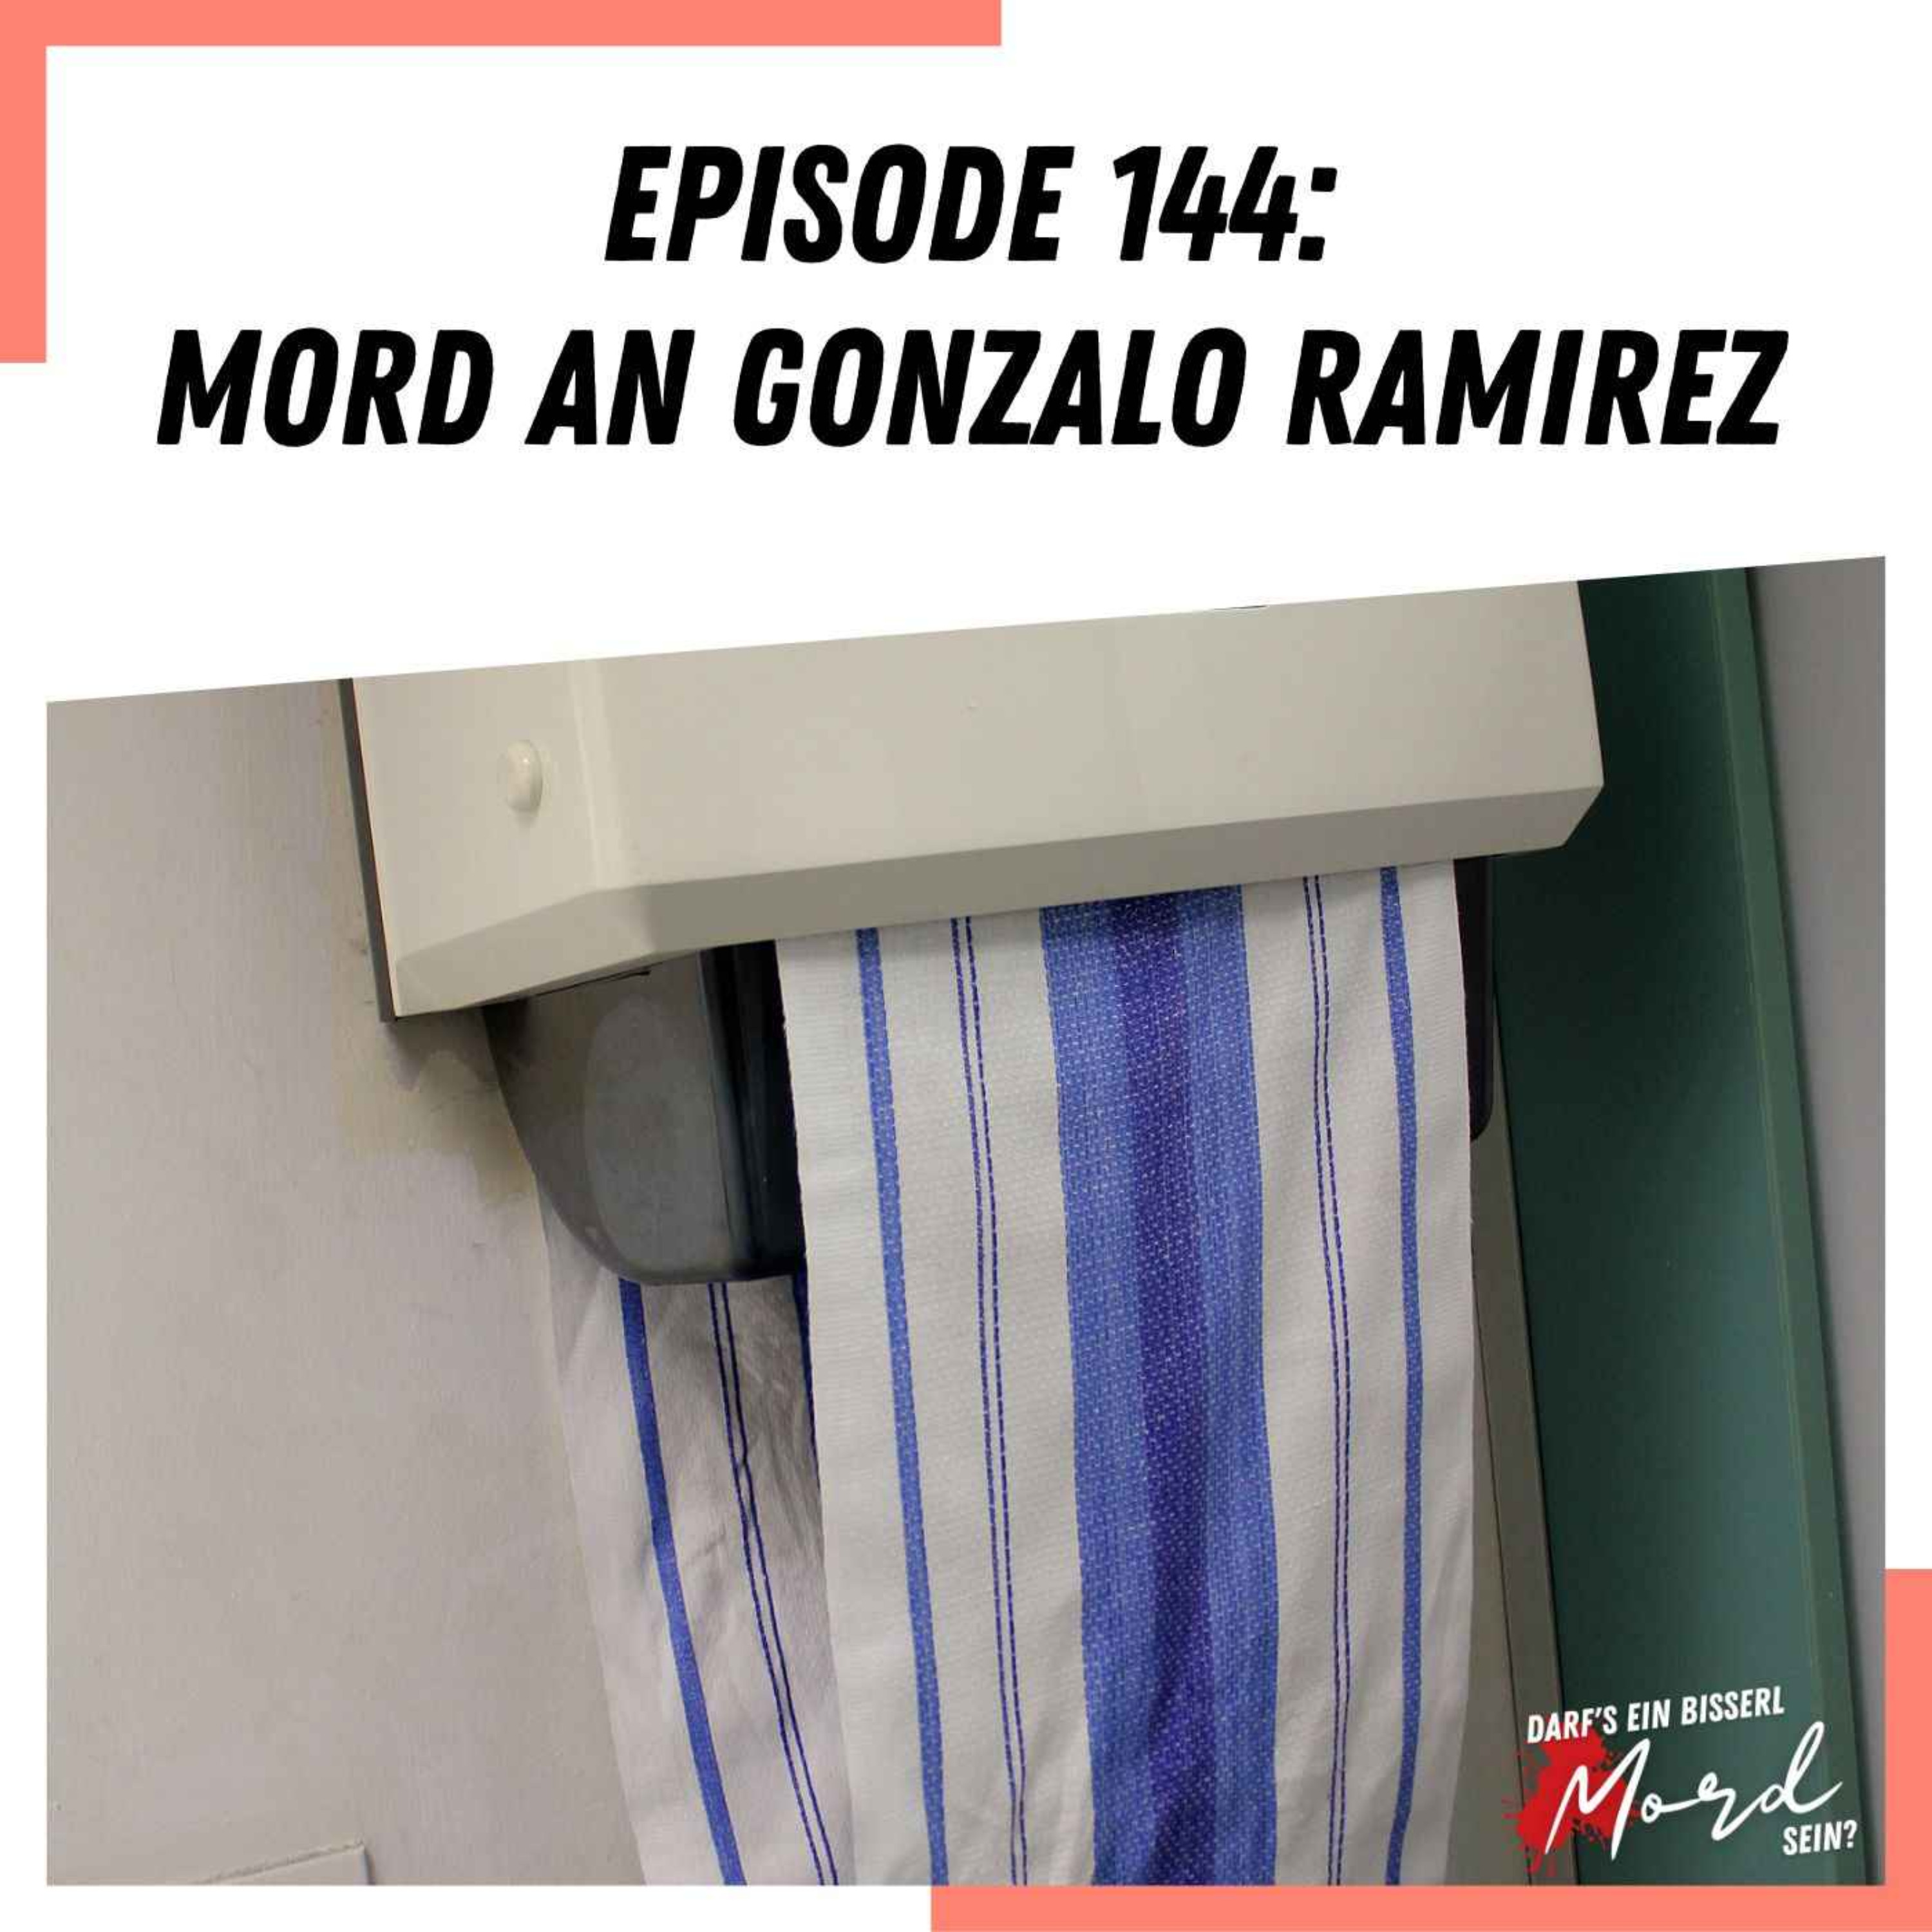 Episode 144: Mord an Gonzalo Ramirez